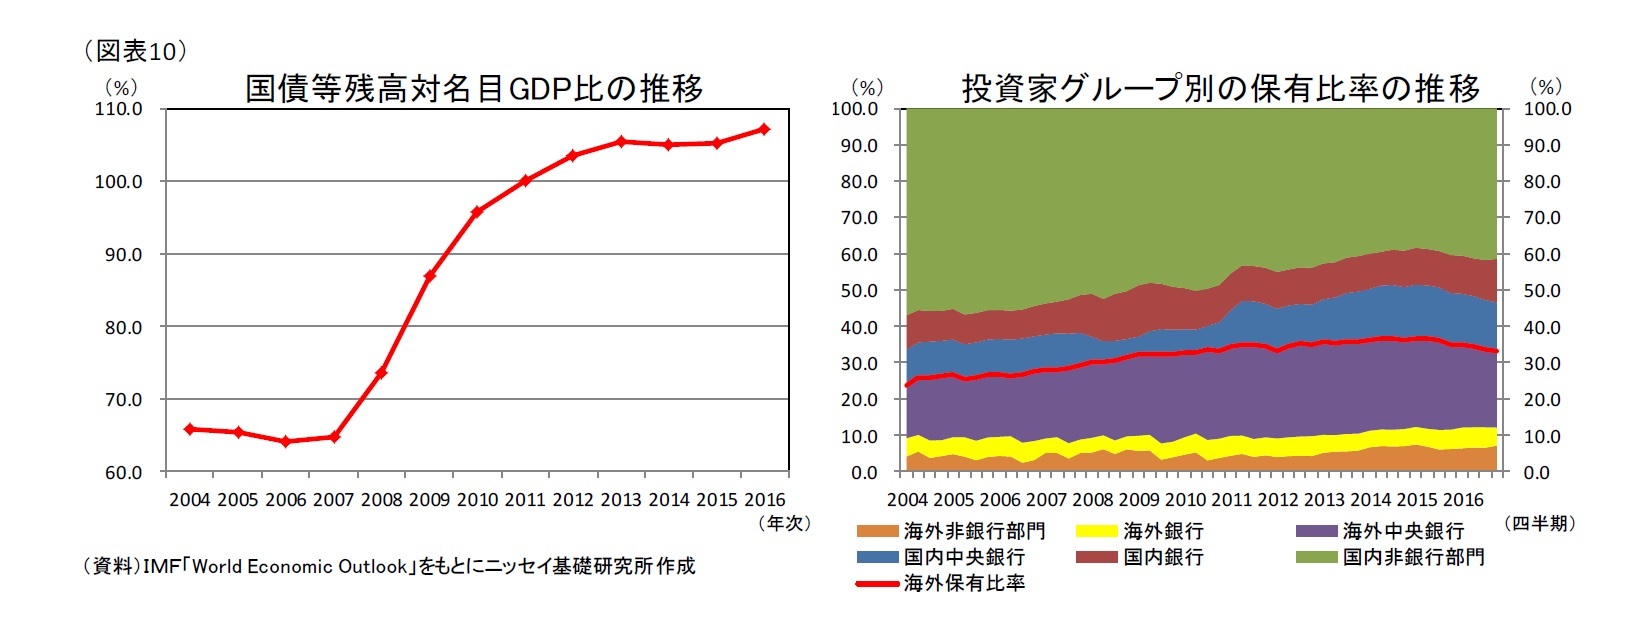 (図表10)国債等残高対名目GDP比の推移/投資家グループ別の保有比率の推移